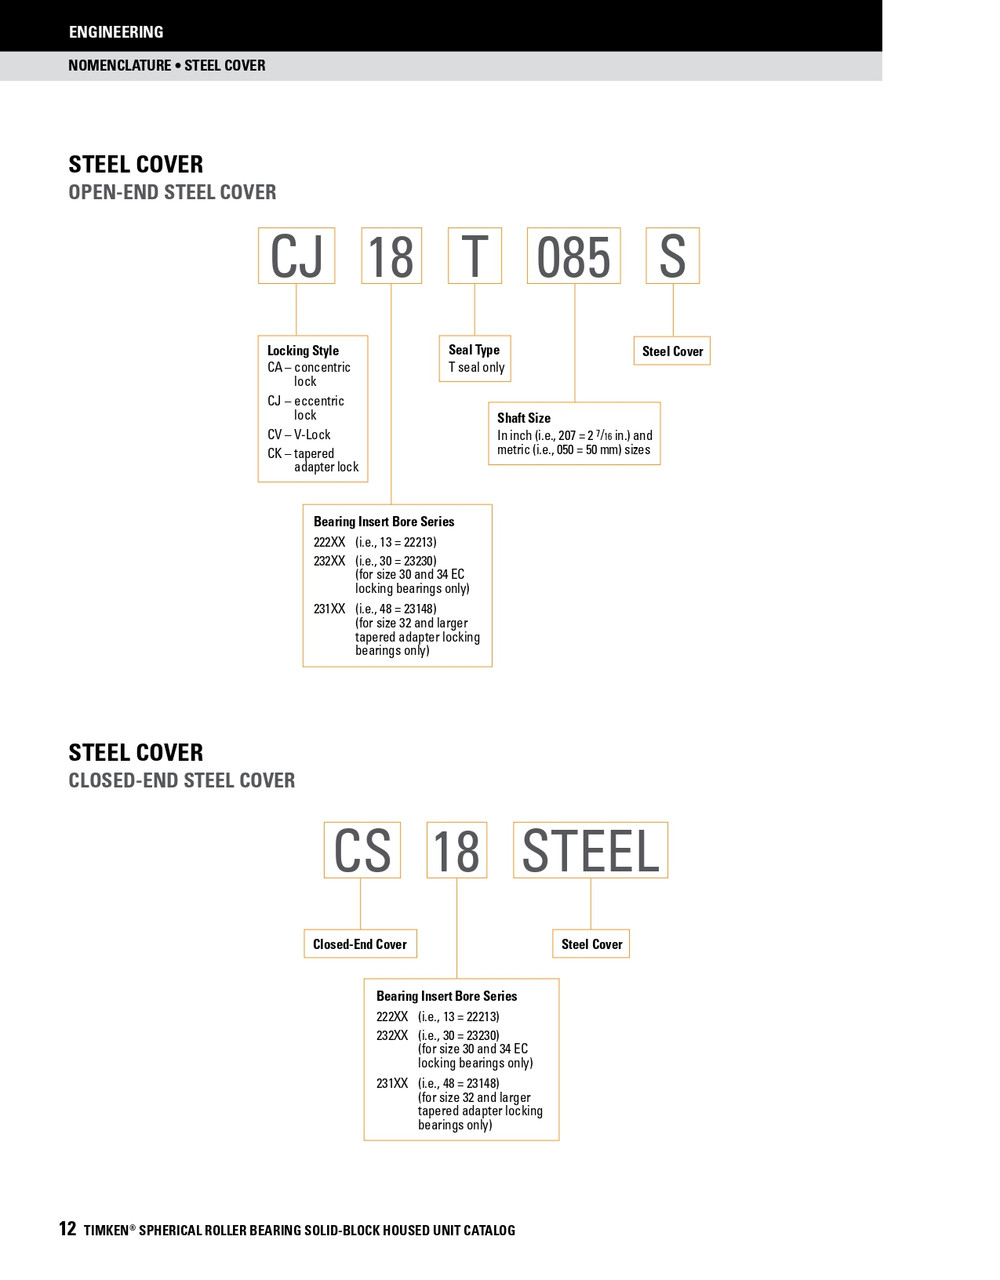 3-3/16" Timken SRB Steel Open End Cover w/Teflon Seal - TA/DV Taper Lock Bushing Type  CK18T303S